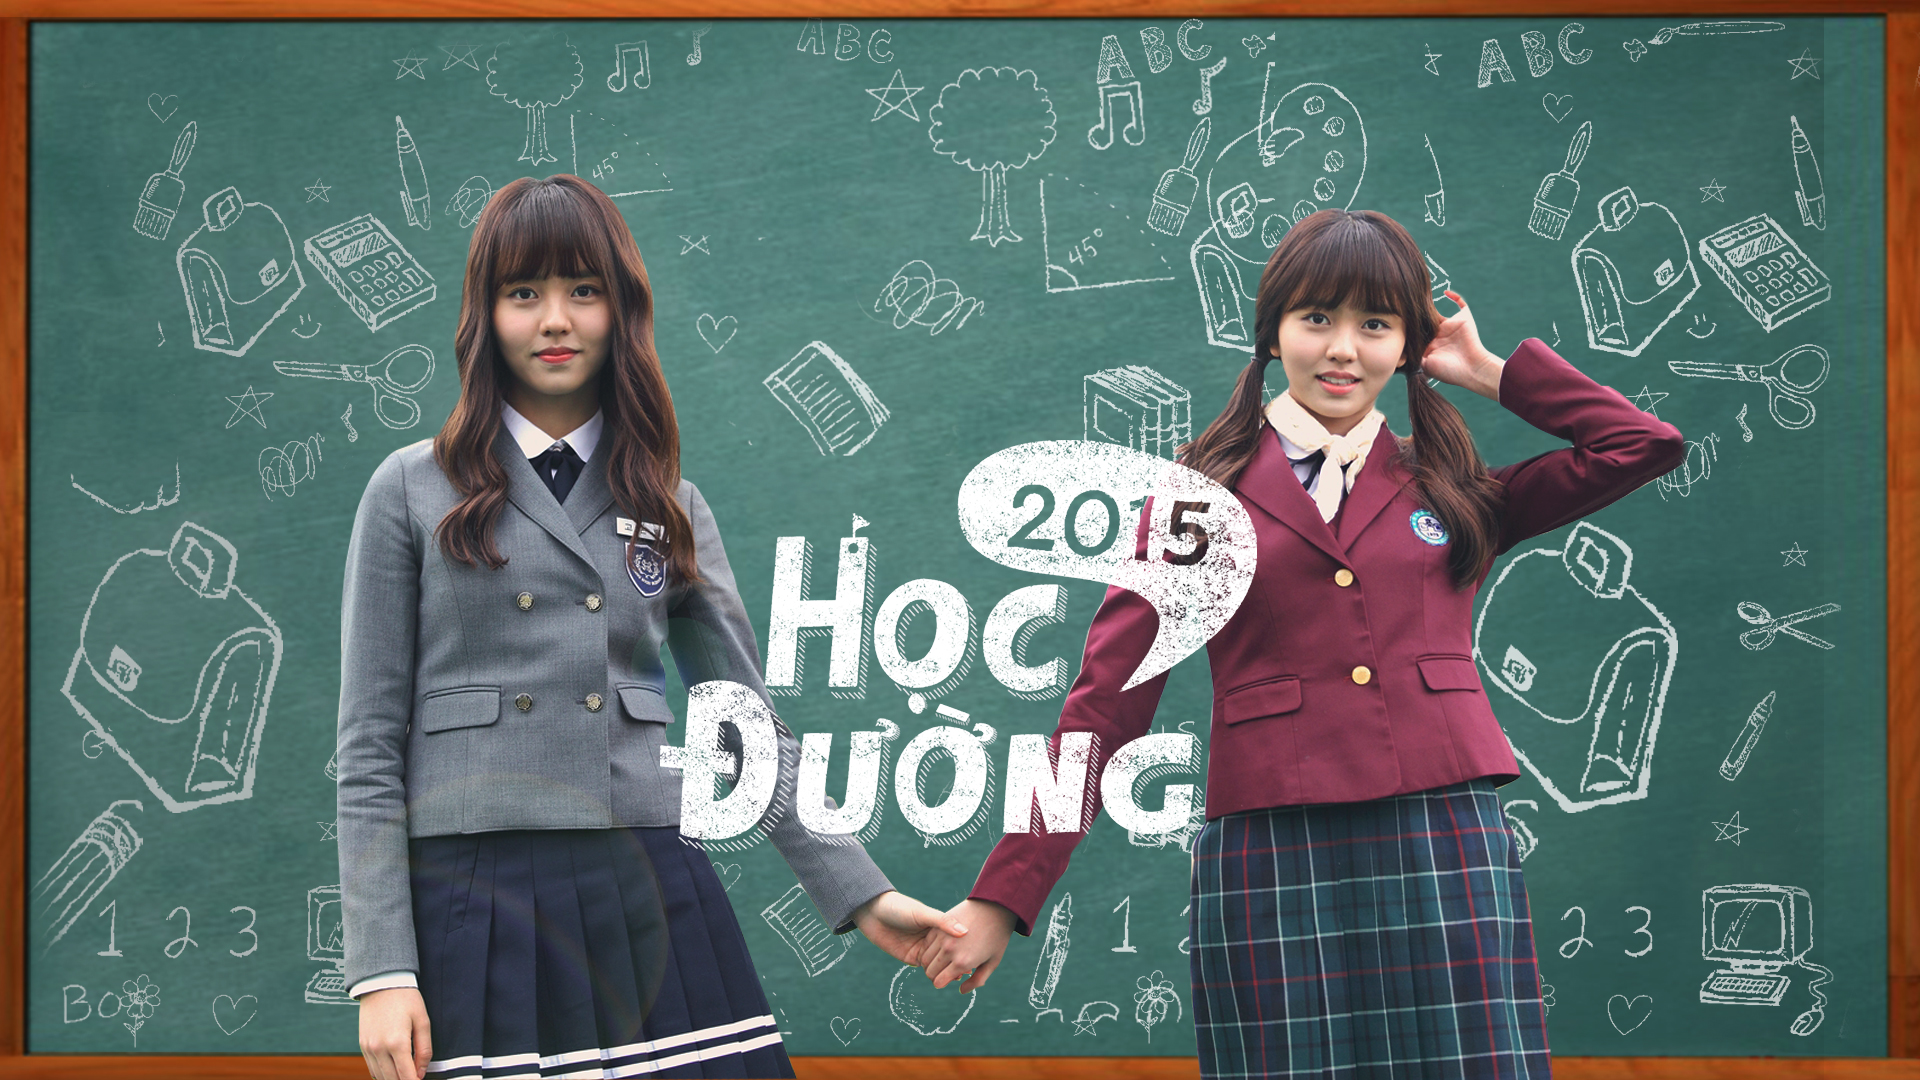 Trường học 2015 (School 2015)